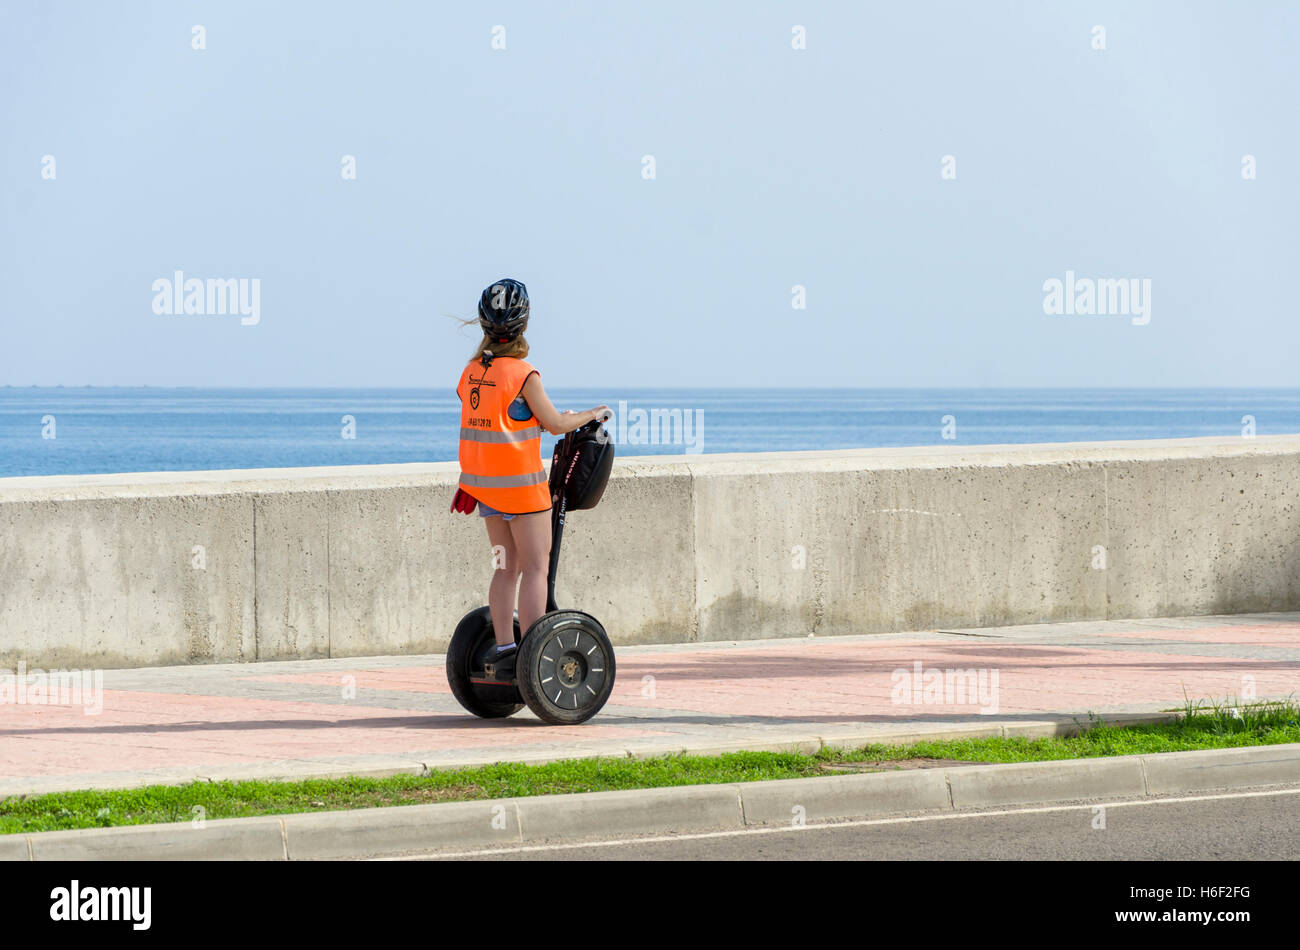 Young tourist visiting Malaga with segway at sea promenade, mediterranean, Port of Malaga, Spain. Stock Photo